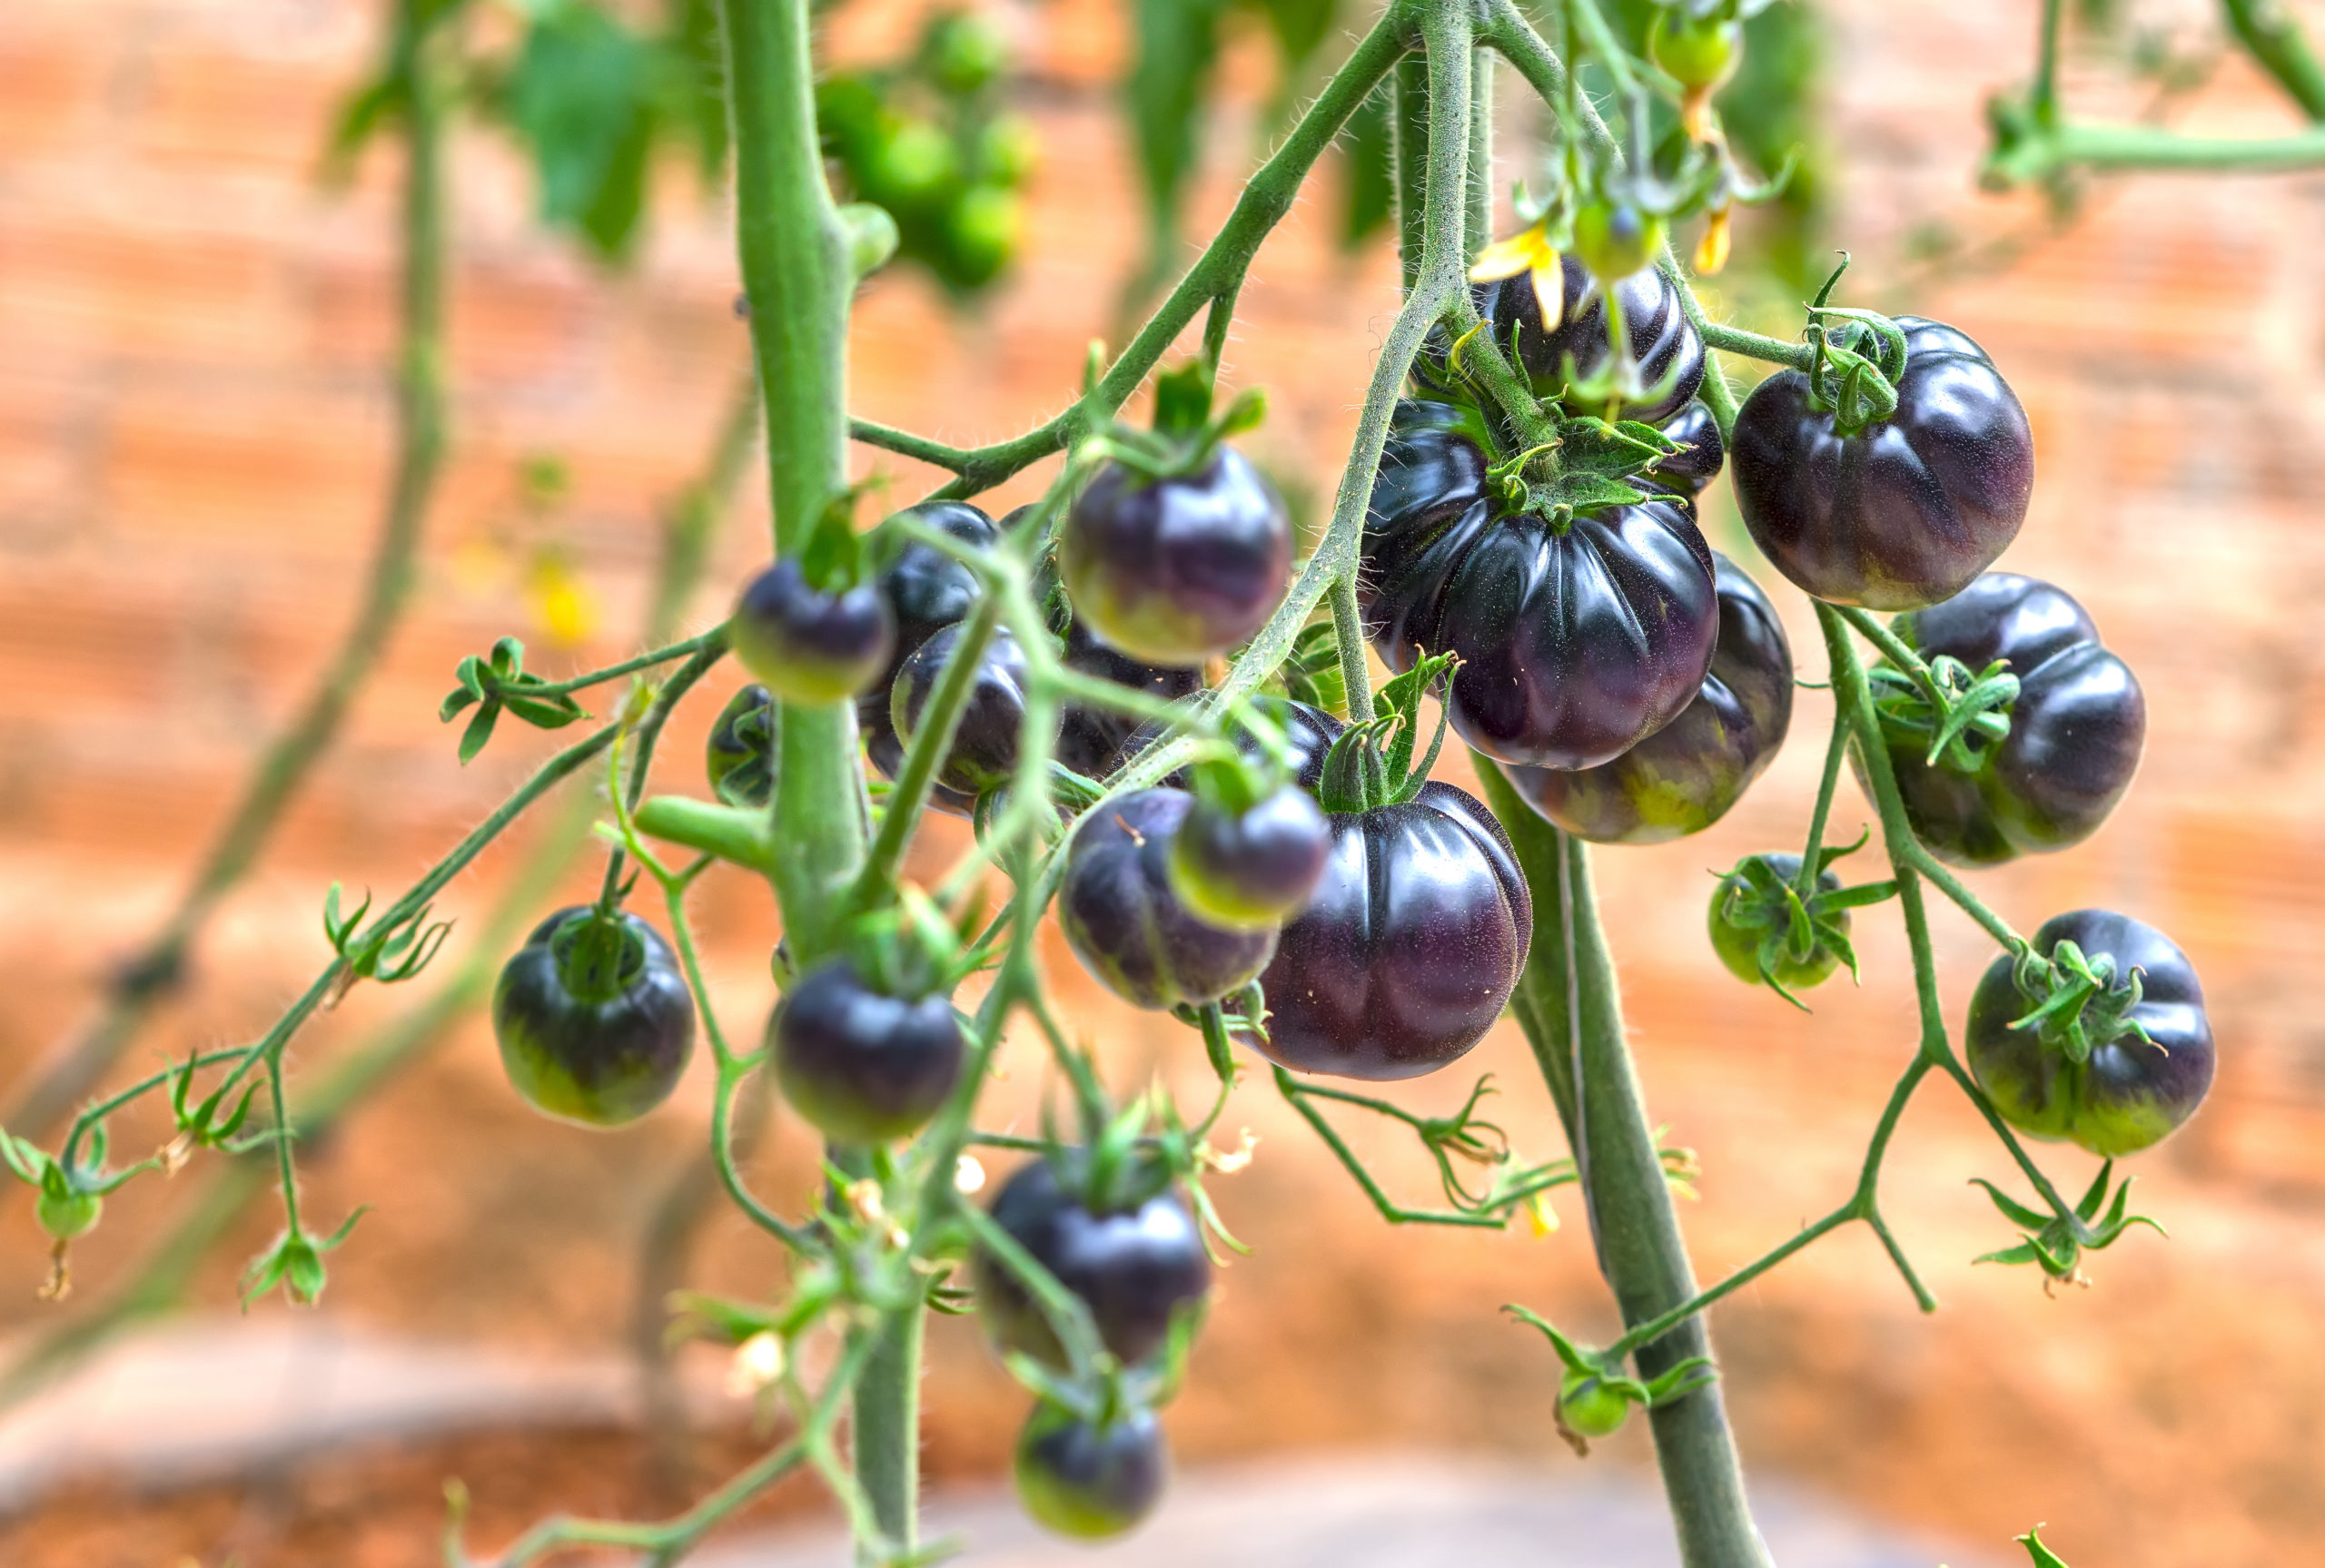 Purple tomatoes vine